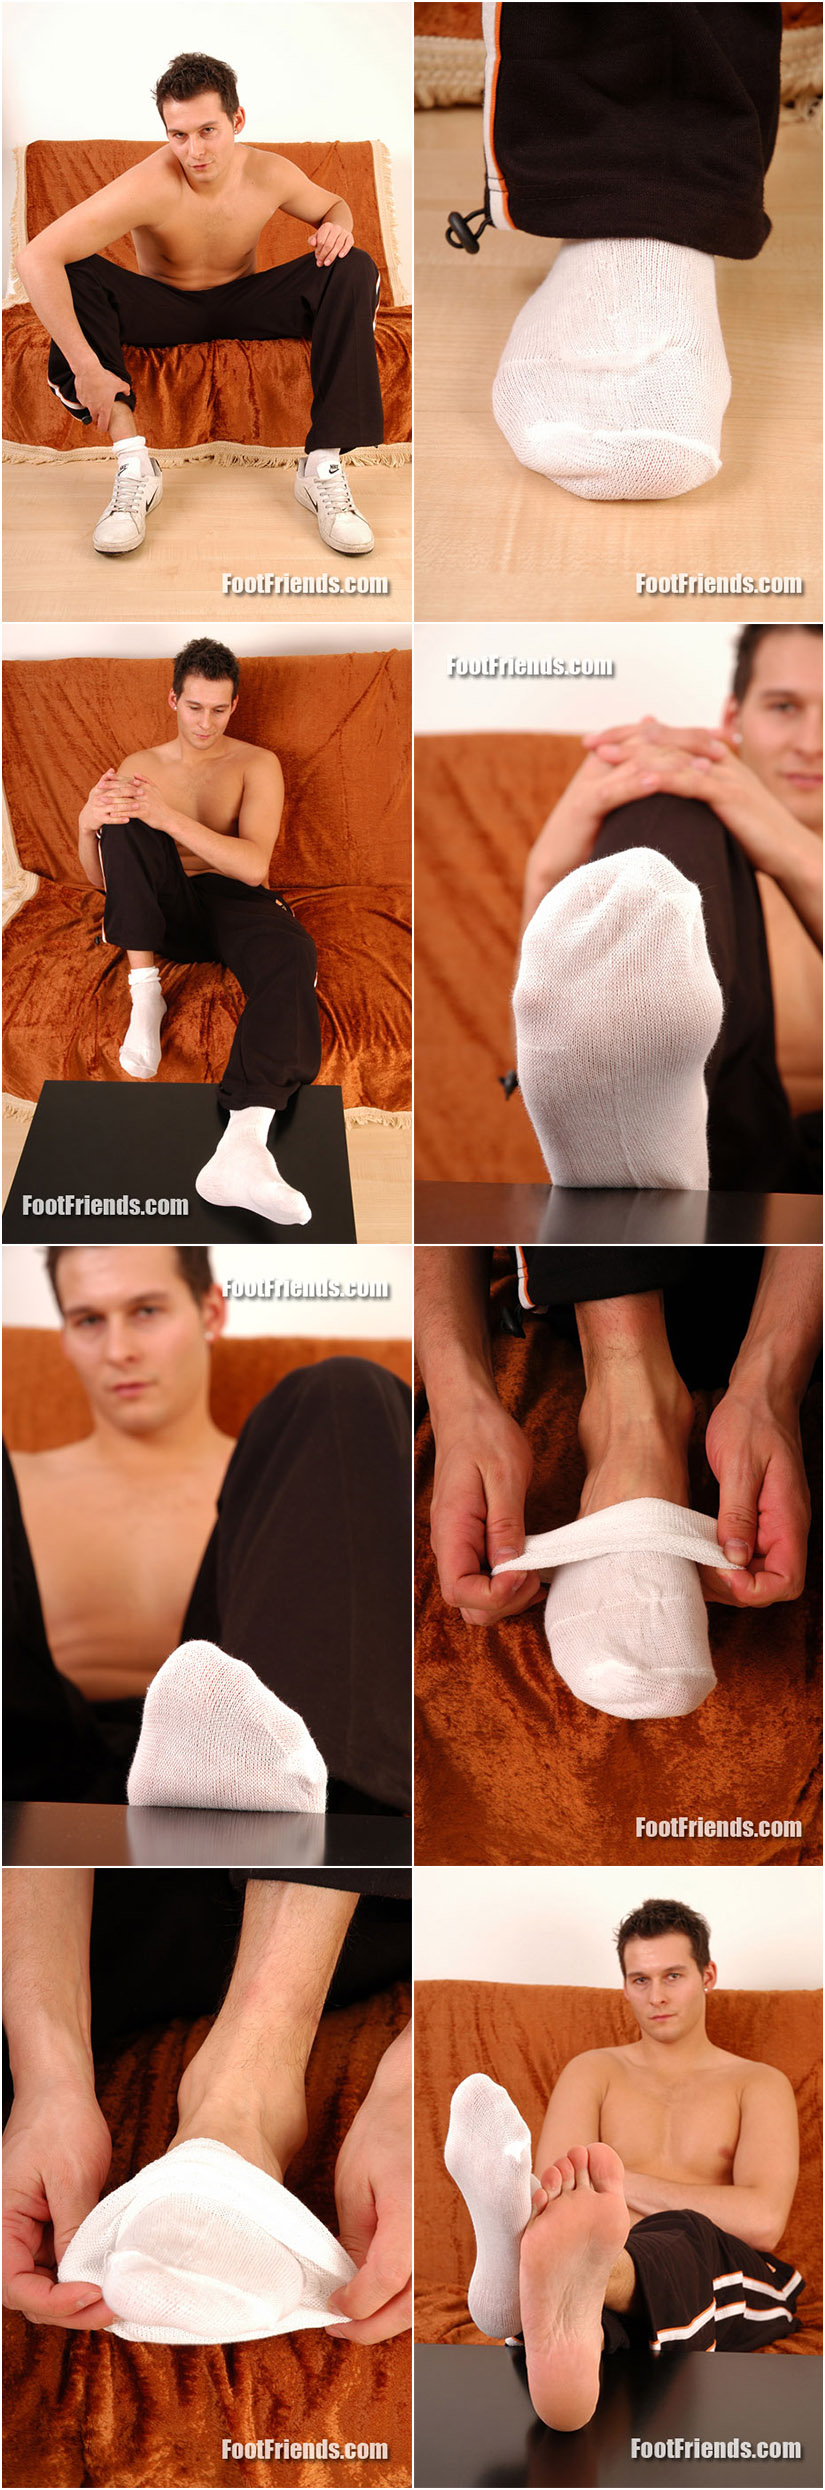 Amateur guy's feet in white socks